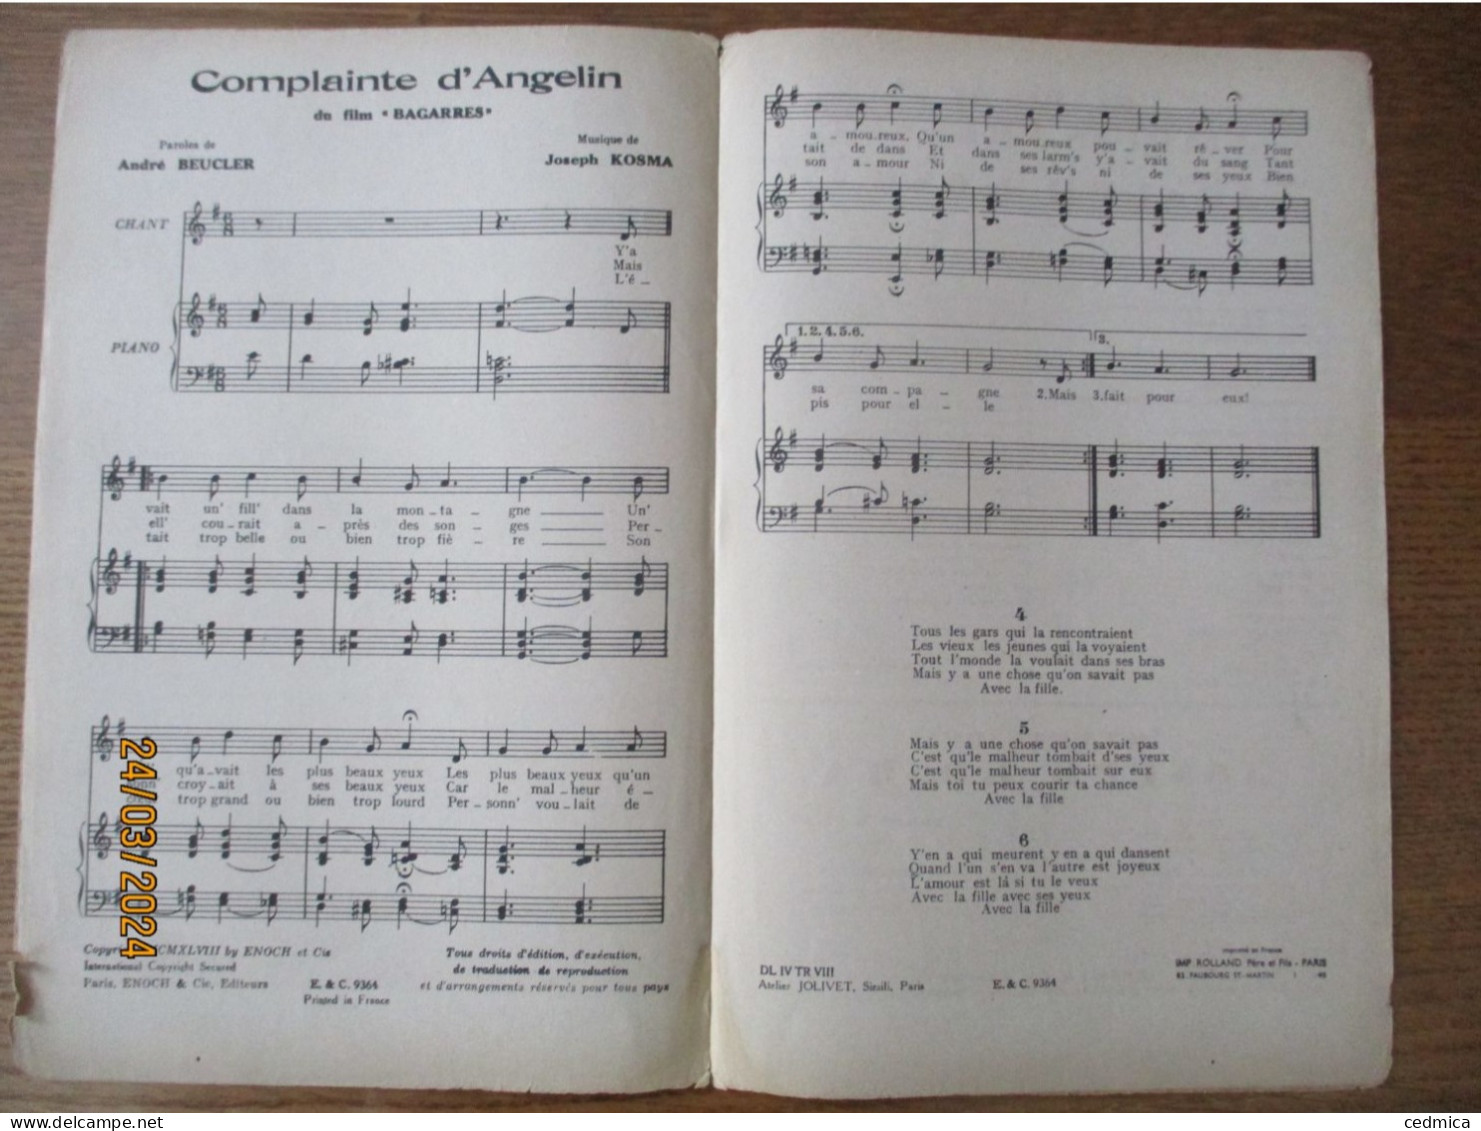 COMPLAINTE D'ANGELIN DU FILM "BAGARRES" PAROLES DE ANDRE BEUCLER MUSIQUE DE JOSEPH KOSMA - Partitions Musicales Anciennes